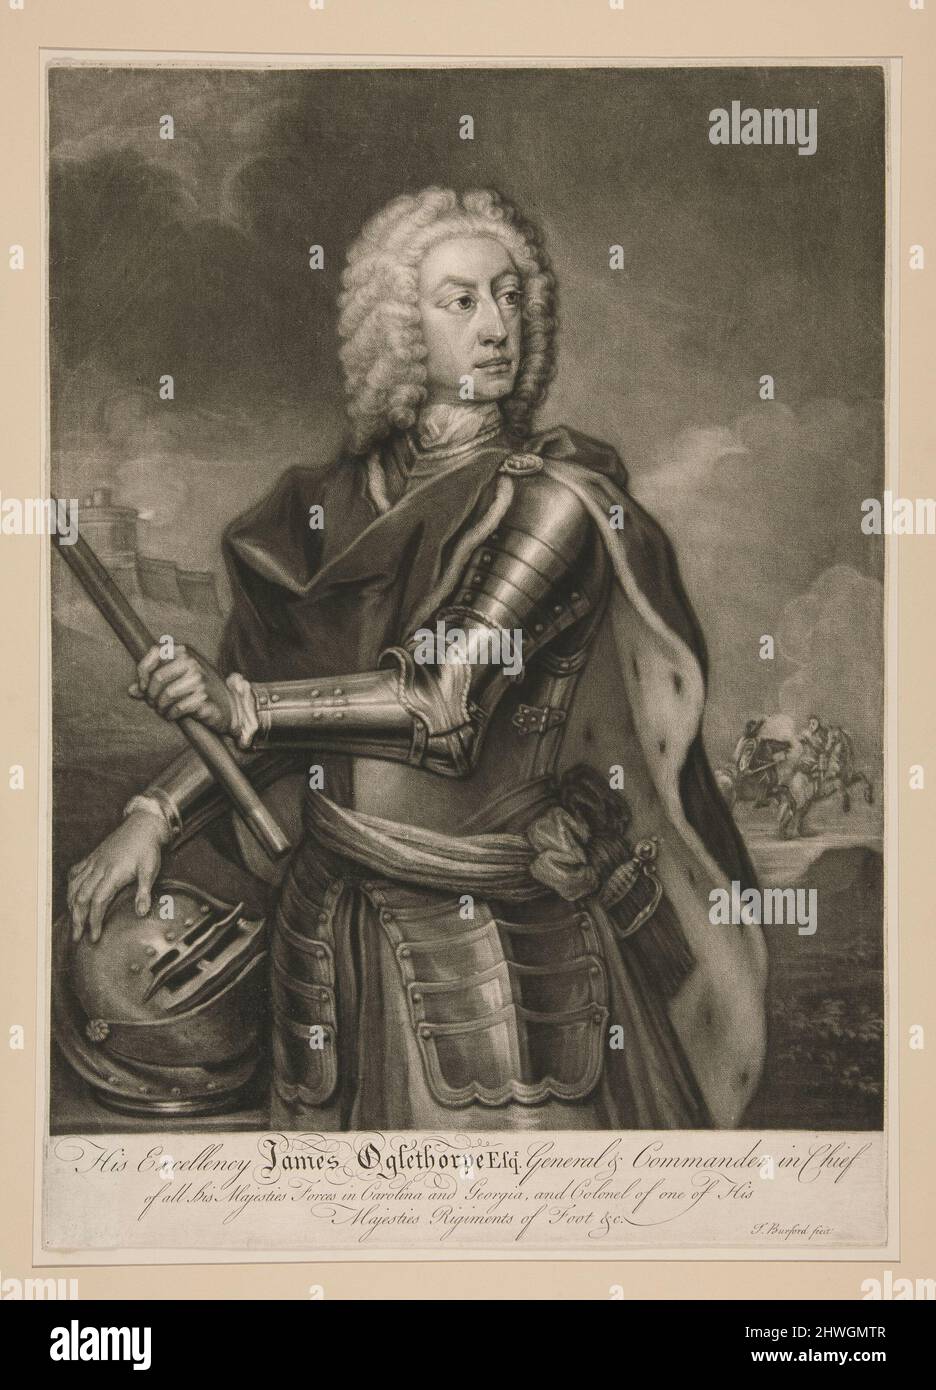 Sua Eccellenza James Oglethorpe, Esq. Generale e Comandante in Capo. Artista: T. Burford, americano, attivo 18th secolo Foto Stock